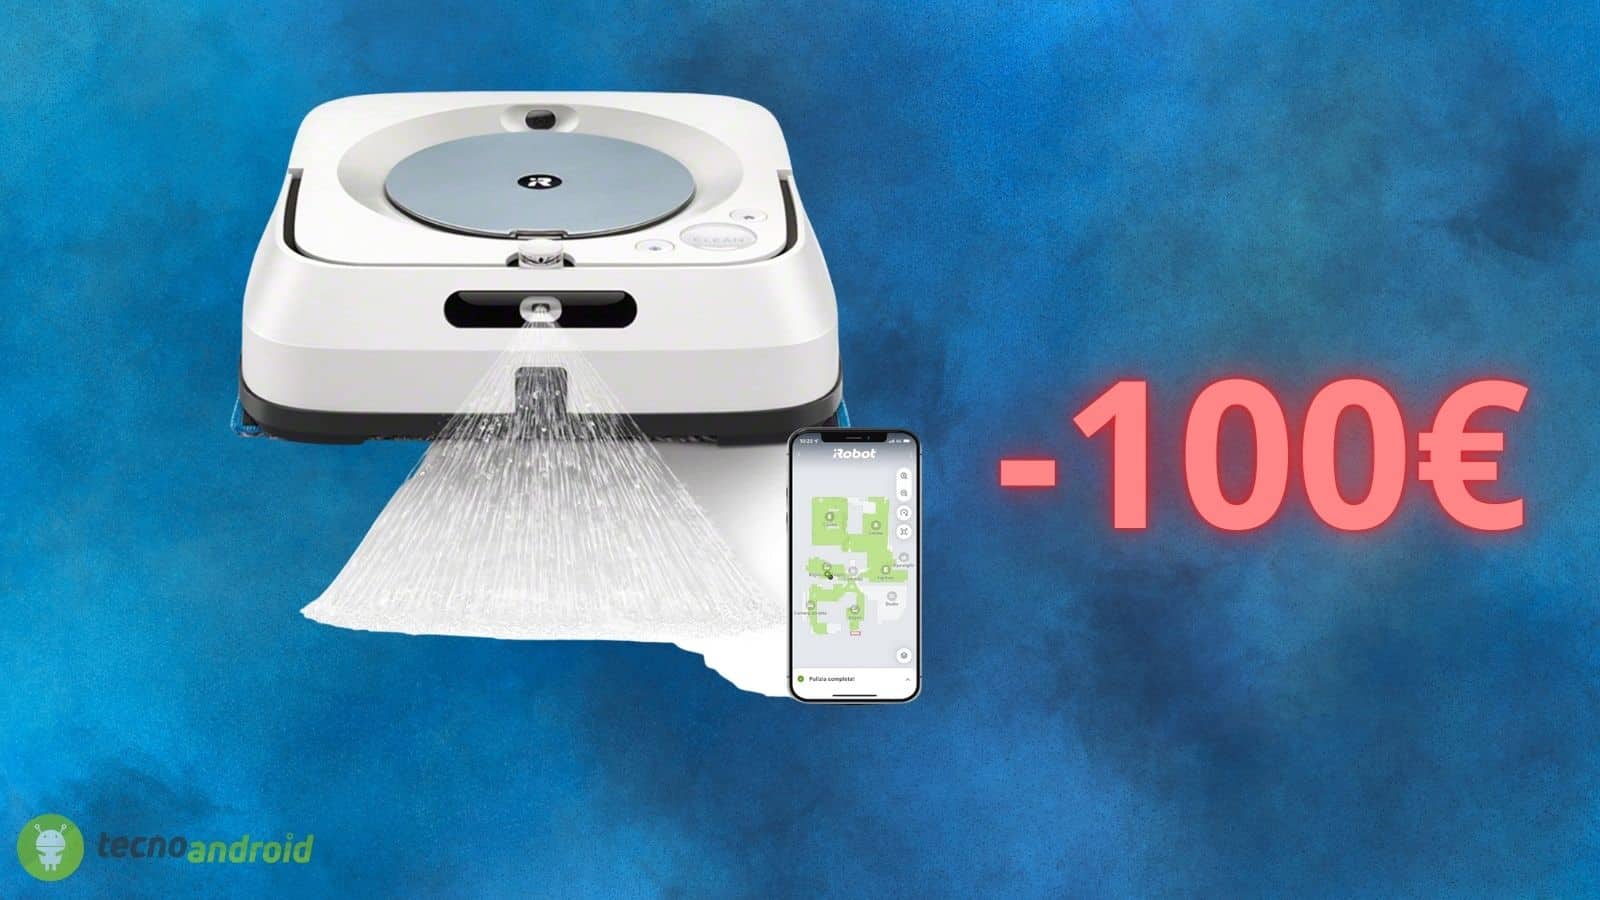 iRobot: il robot lavapavimenti ha uno sconto di oltre 100€ su AMAZON